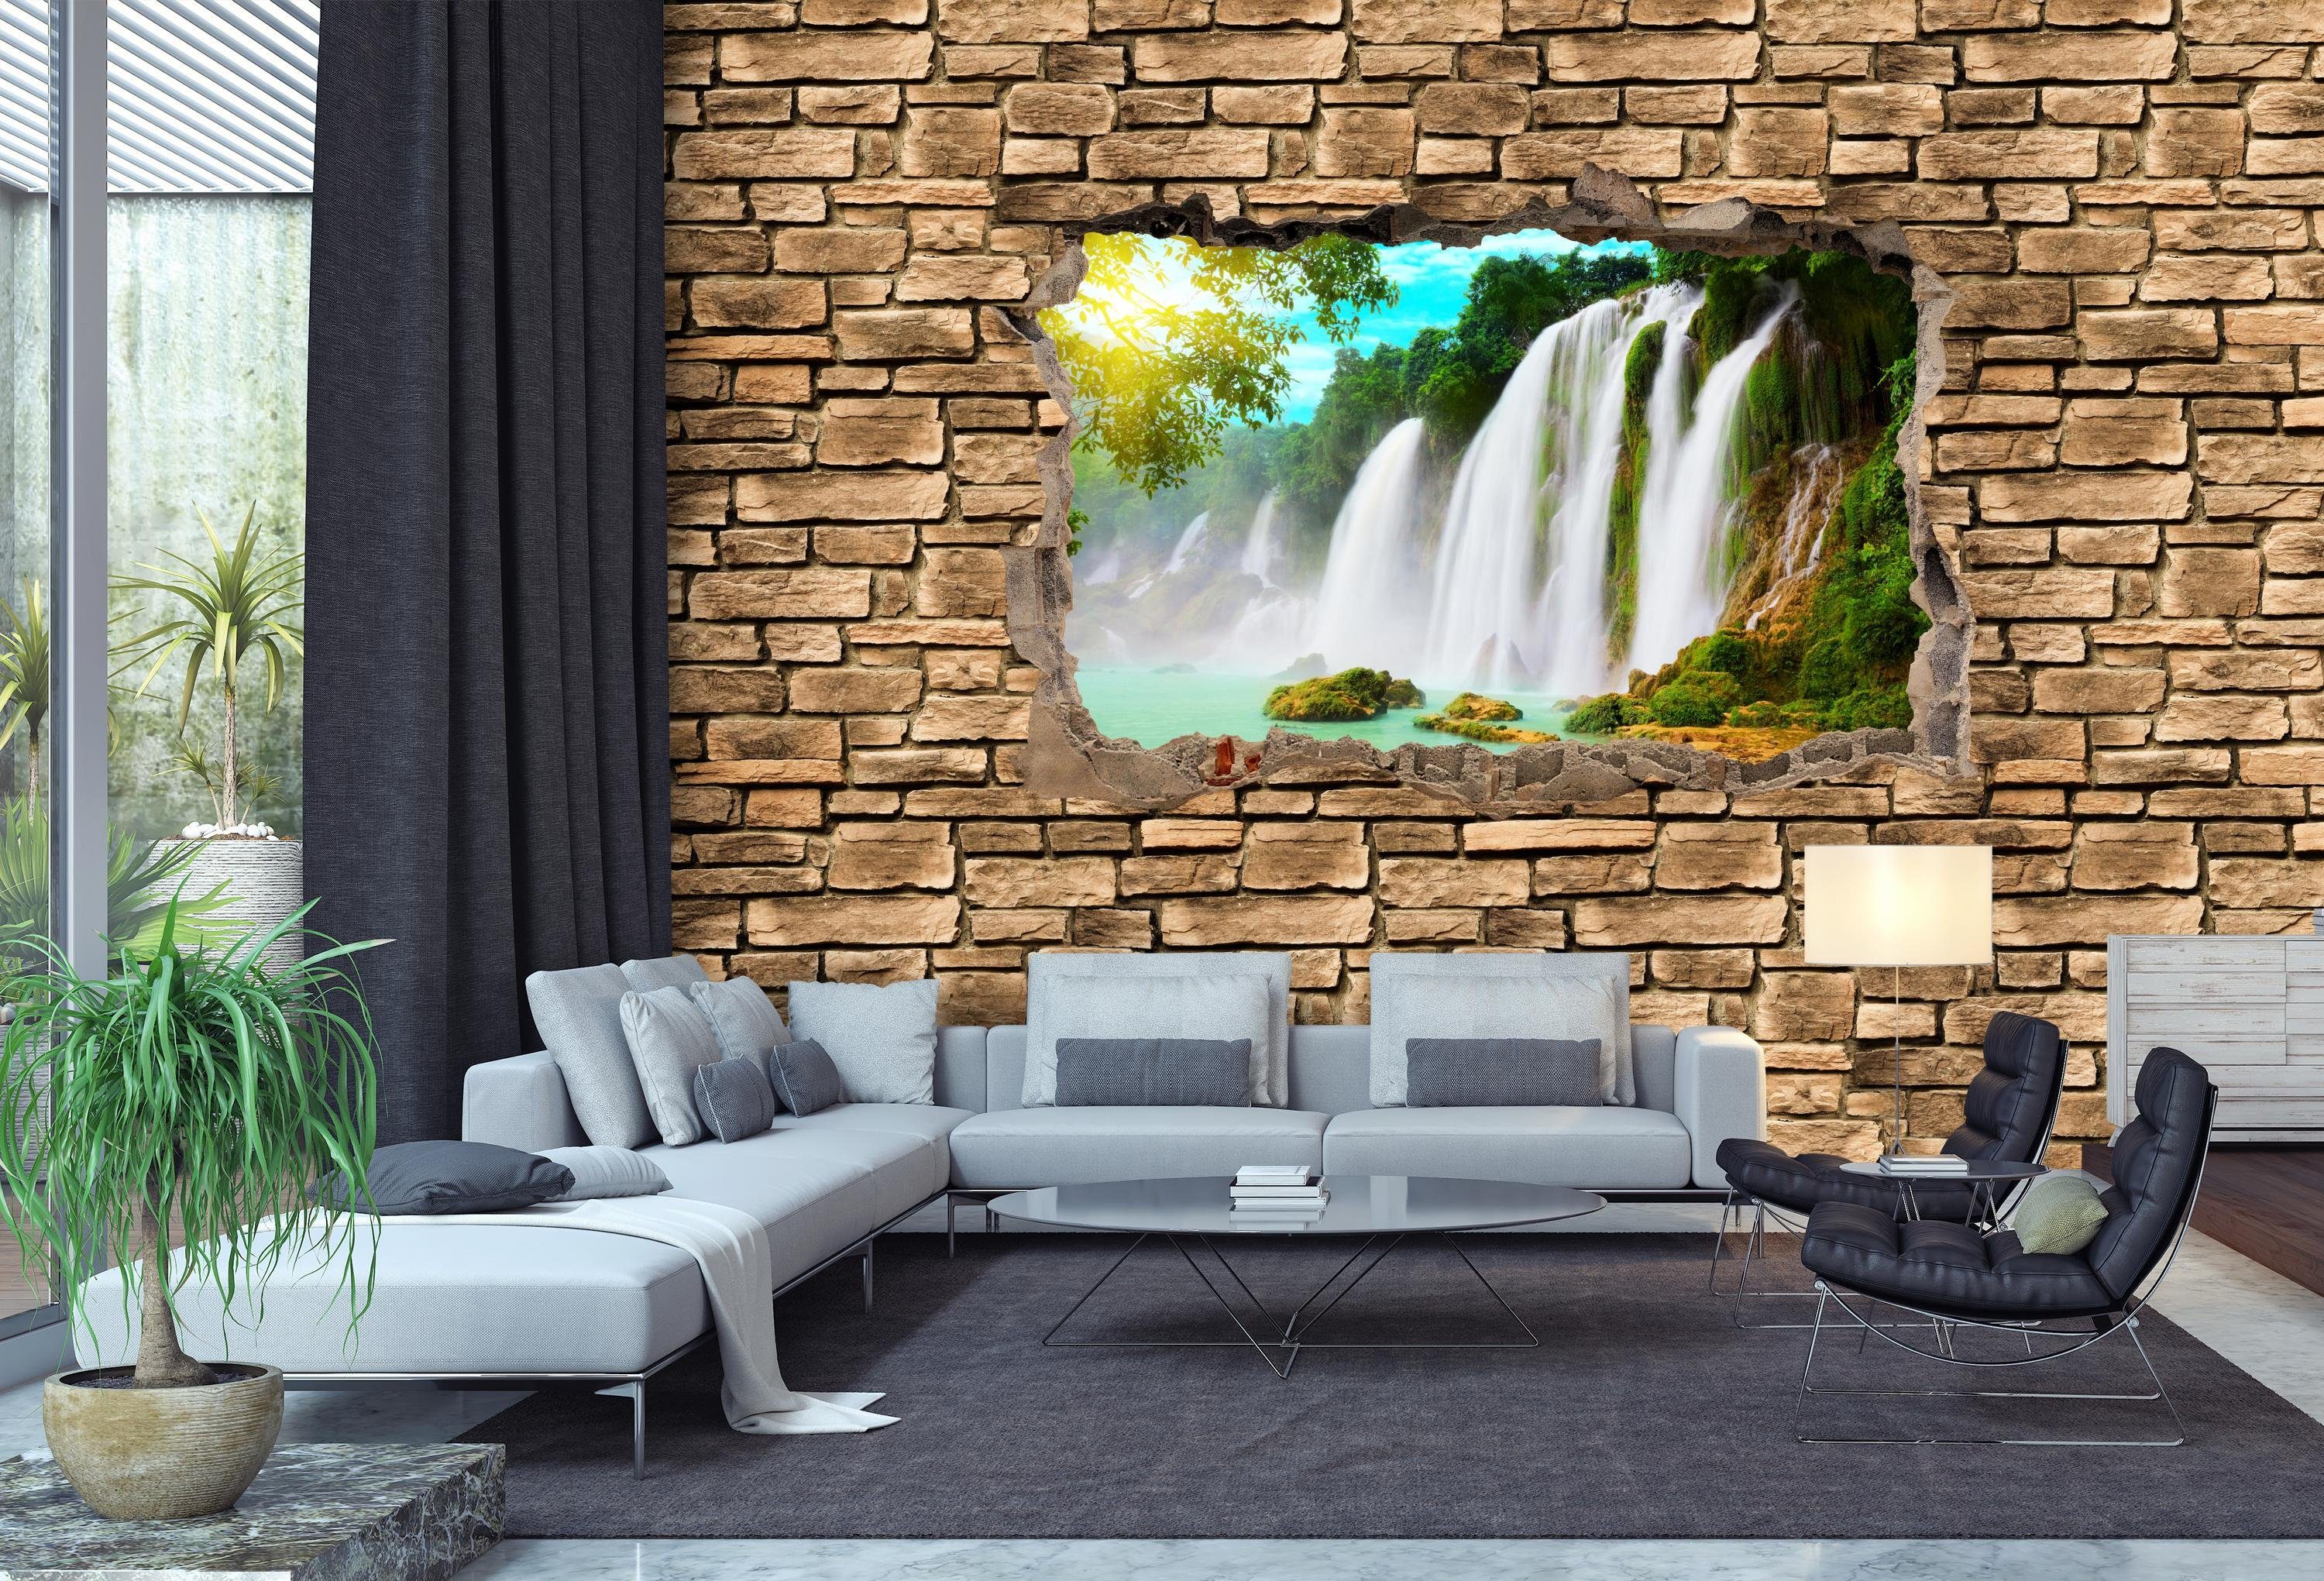 wandmotiv24 Fototapete 3D Wasserfall - matt, glatt, Wandtapete, Motivtapete, Steinmauer, Vliestapete